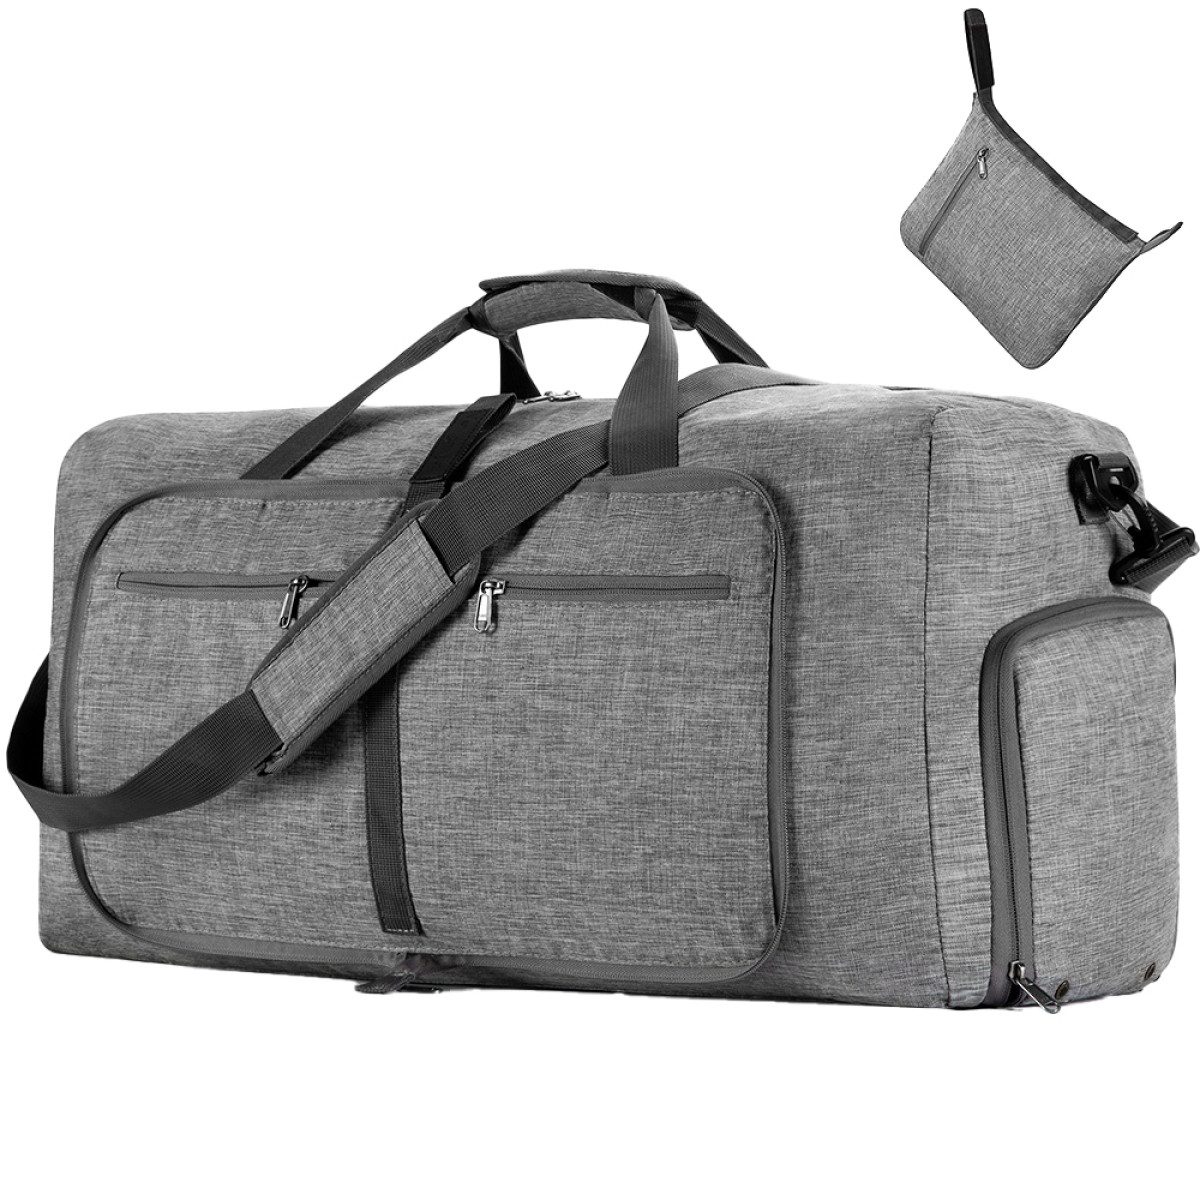 Rnemitery Sporttasche 65L Reisetasche Groß mit Schuhfach,Faltbare Tasche für Handgepäck, Wochenendtasche für Camping, Reisen, Fitness, Sport